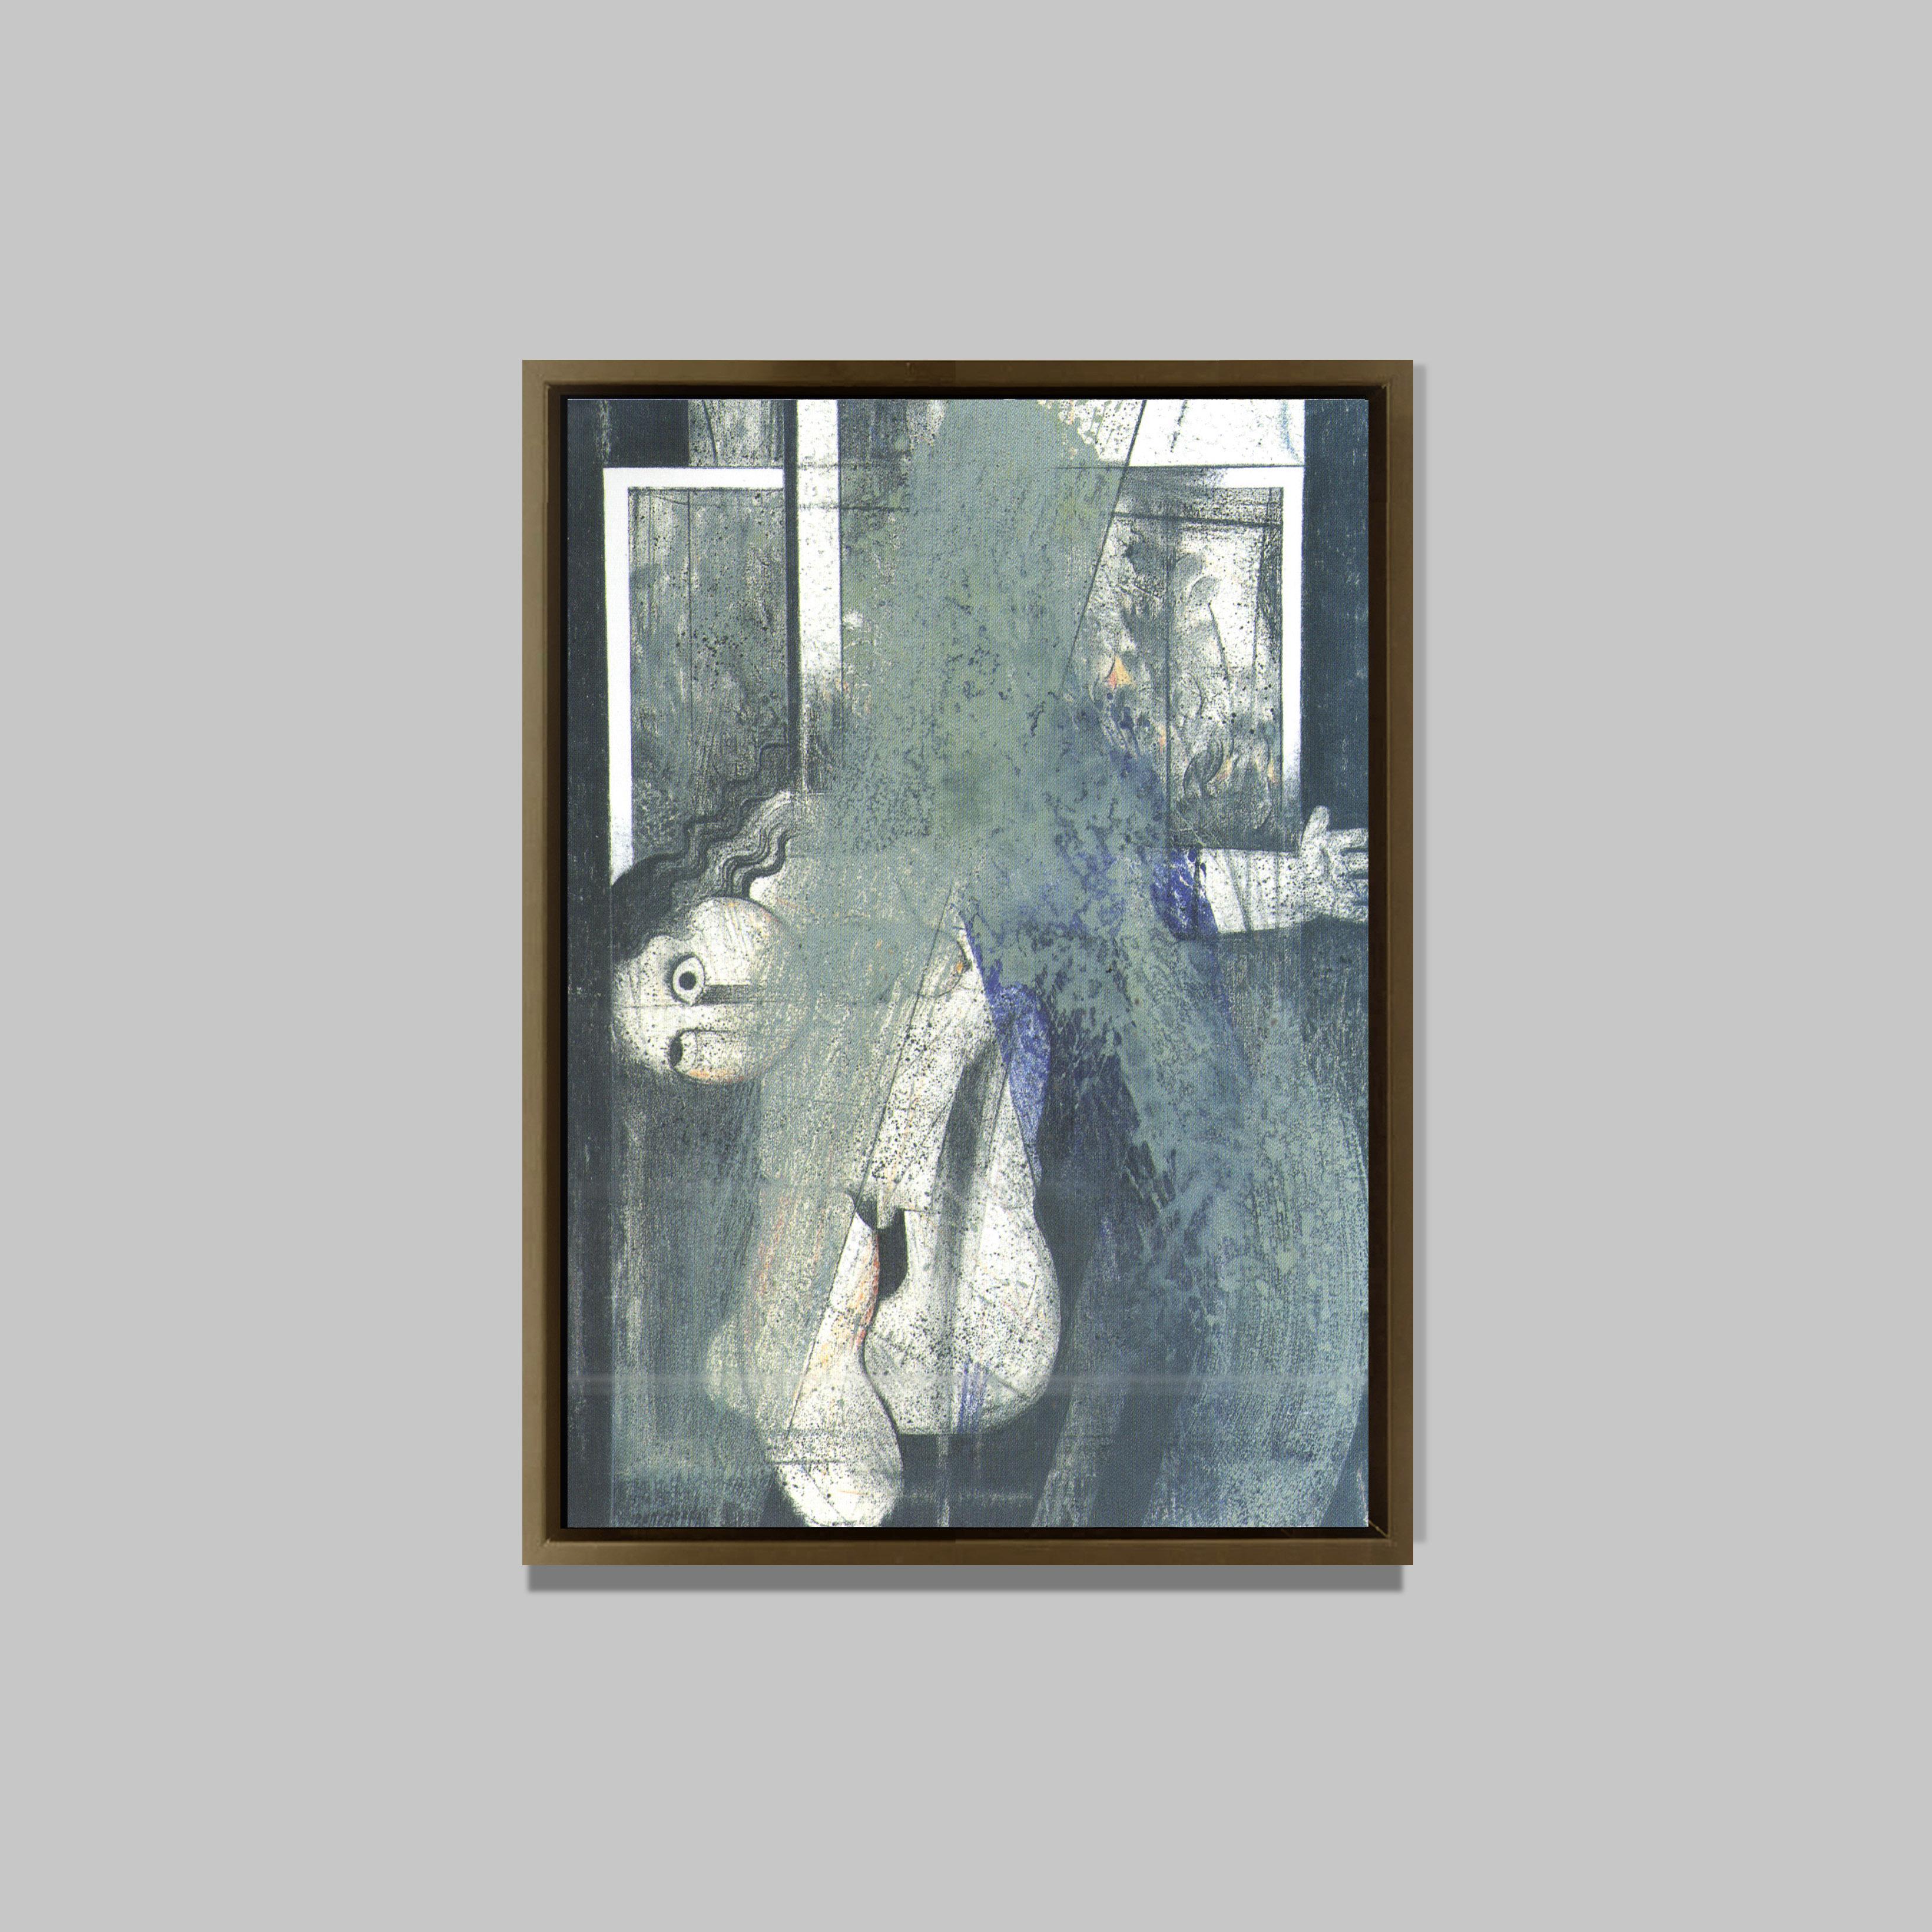 L'invitation, 2006
Huile sur toile
95 x 68 cm